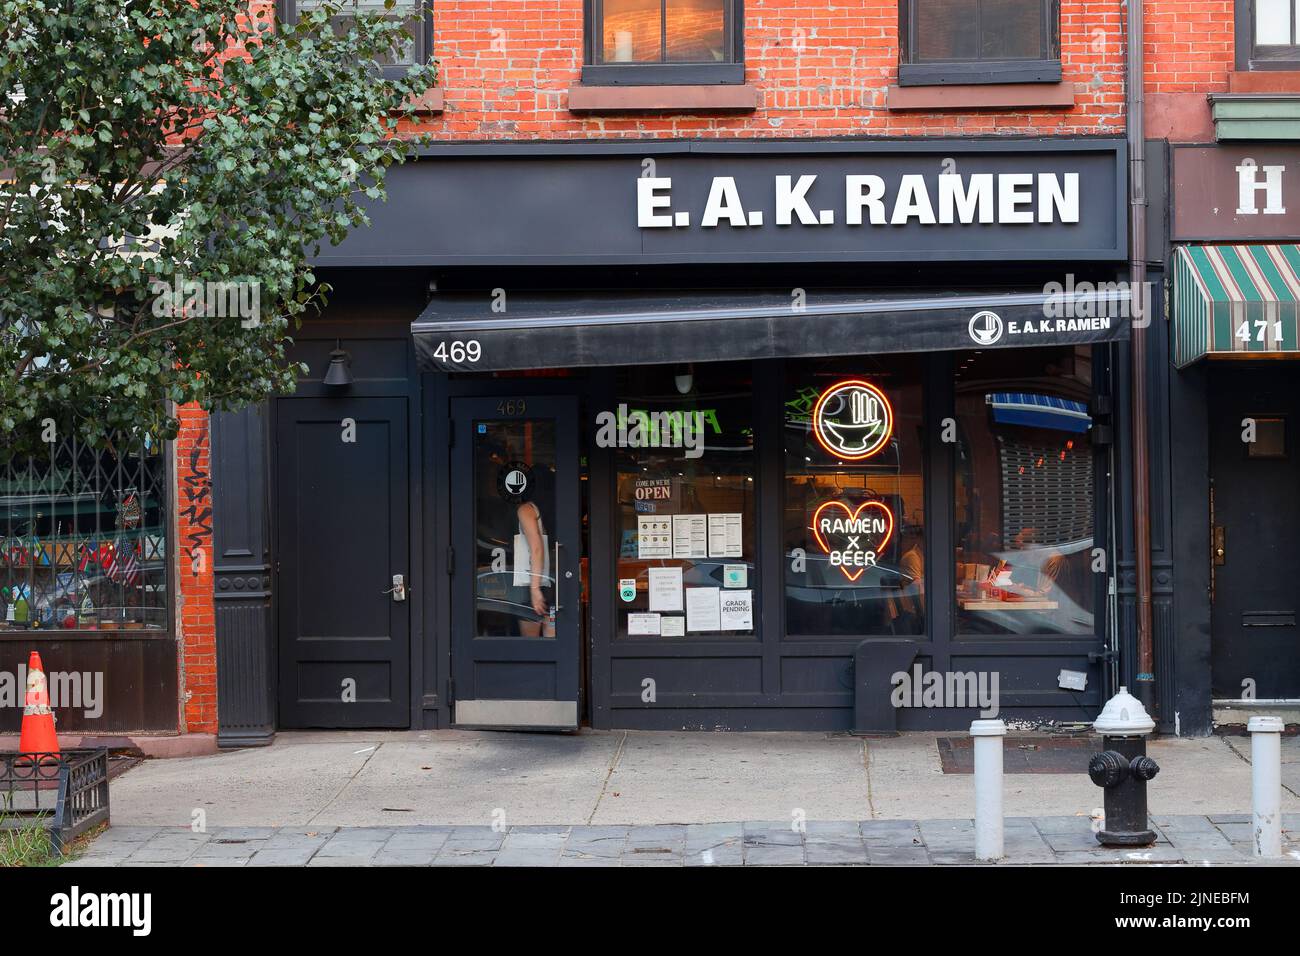 E.A.K. Ramen, 469 6. Ave, New York, NYC Foto von einem japanischen Ramen-Restaurant im Greenwich Village in Manhattan Stockfoto